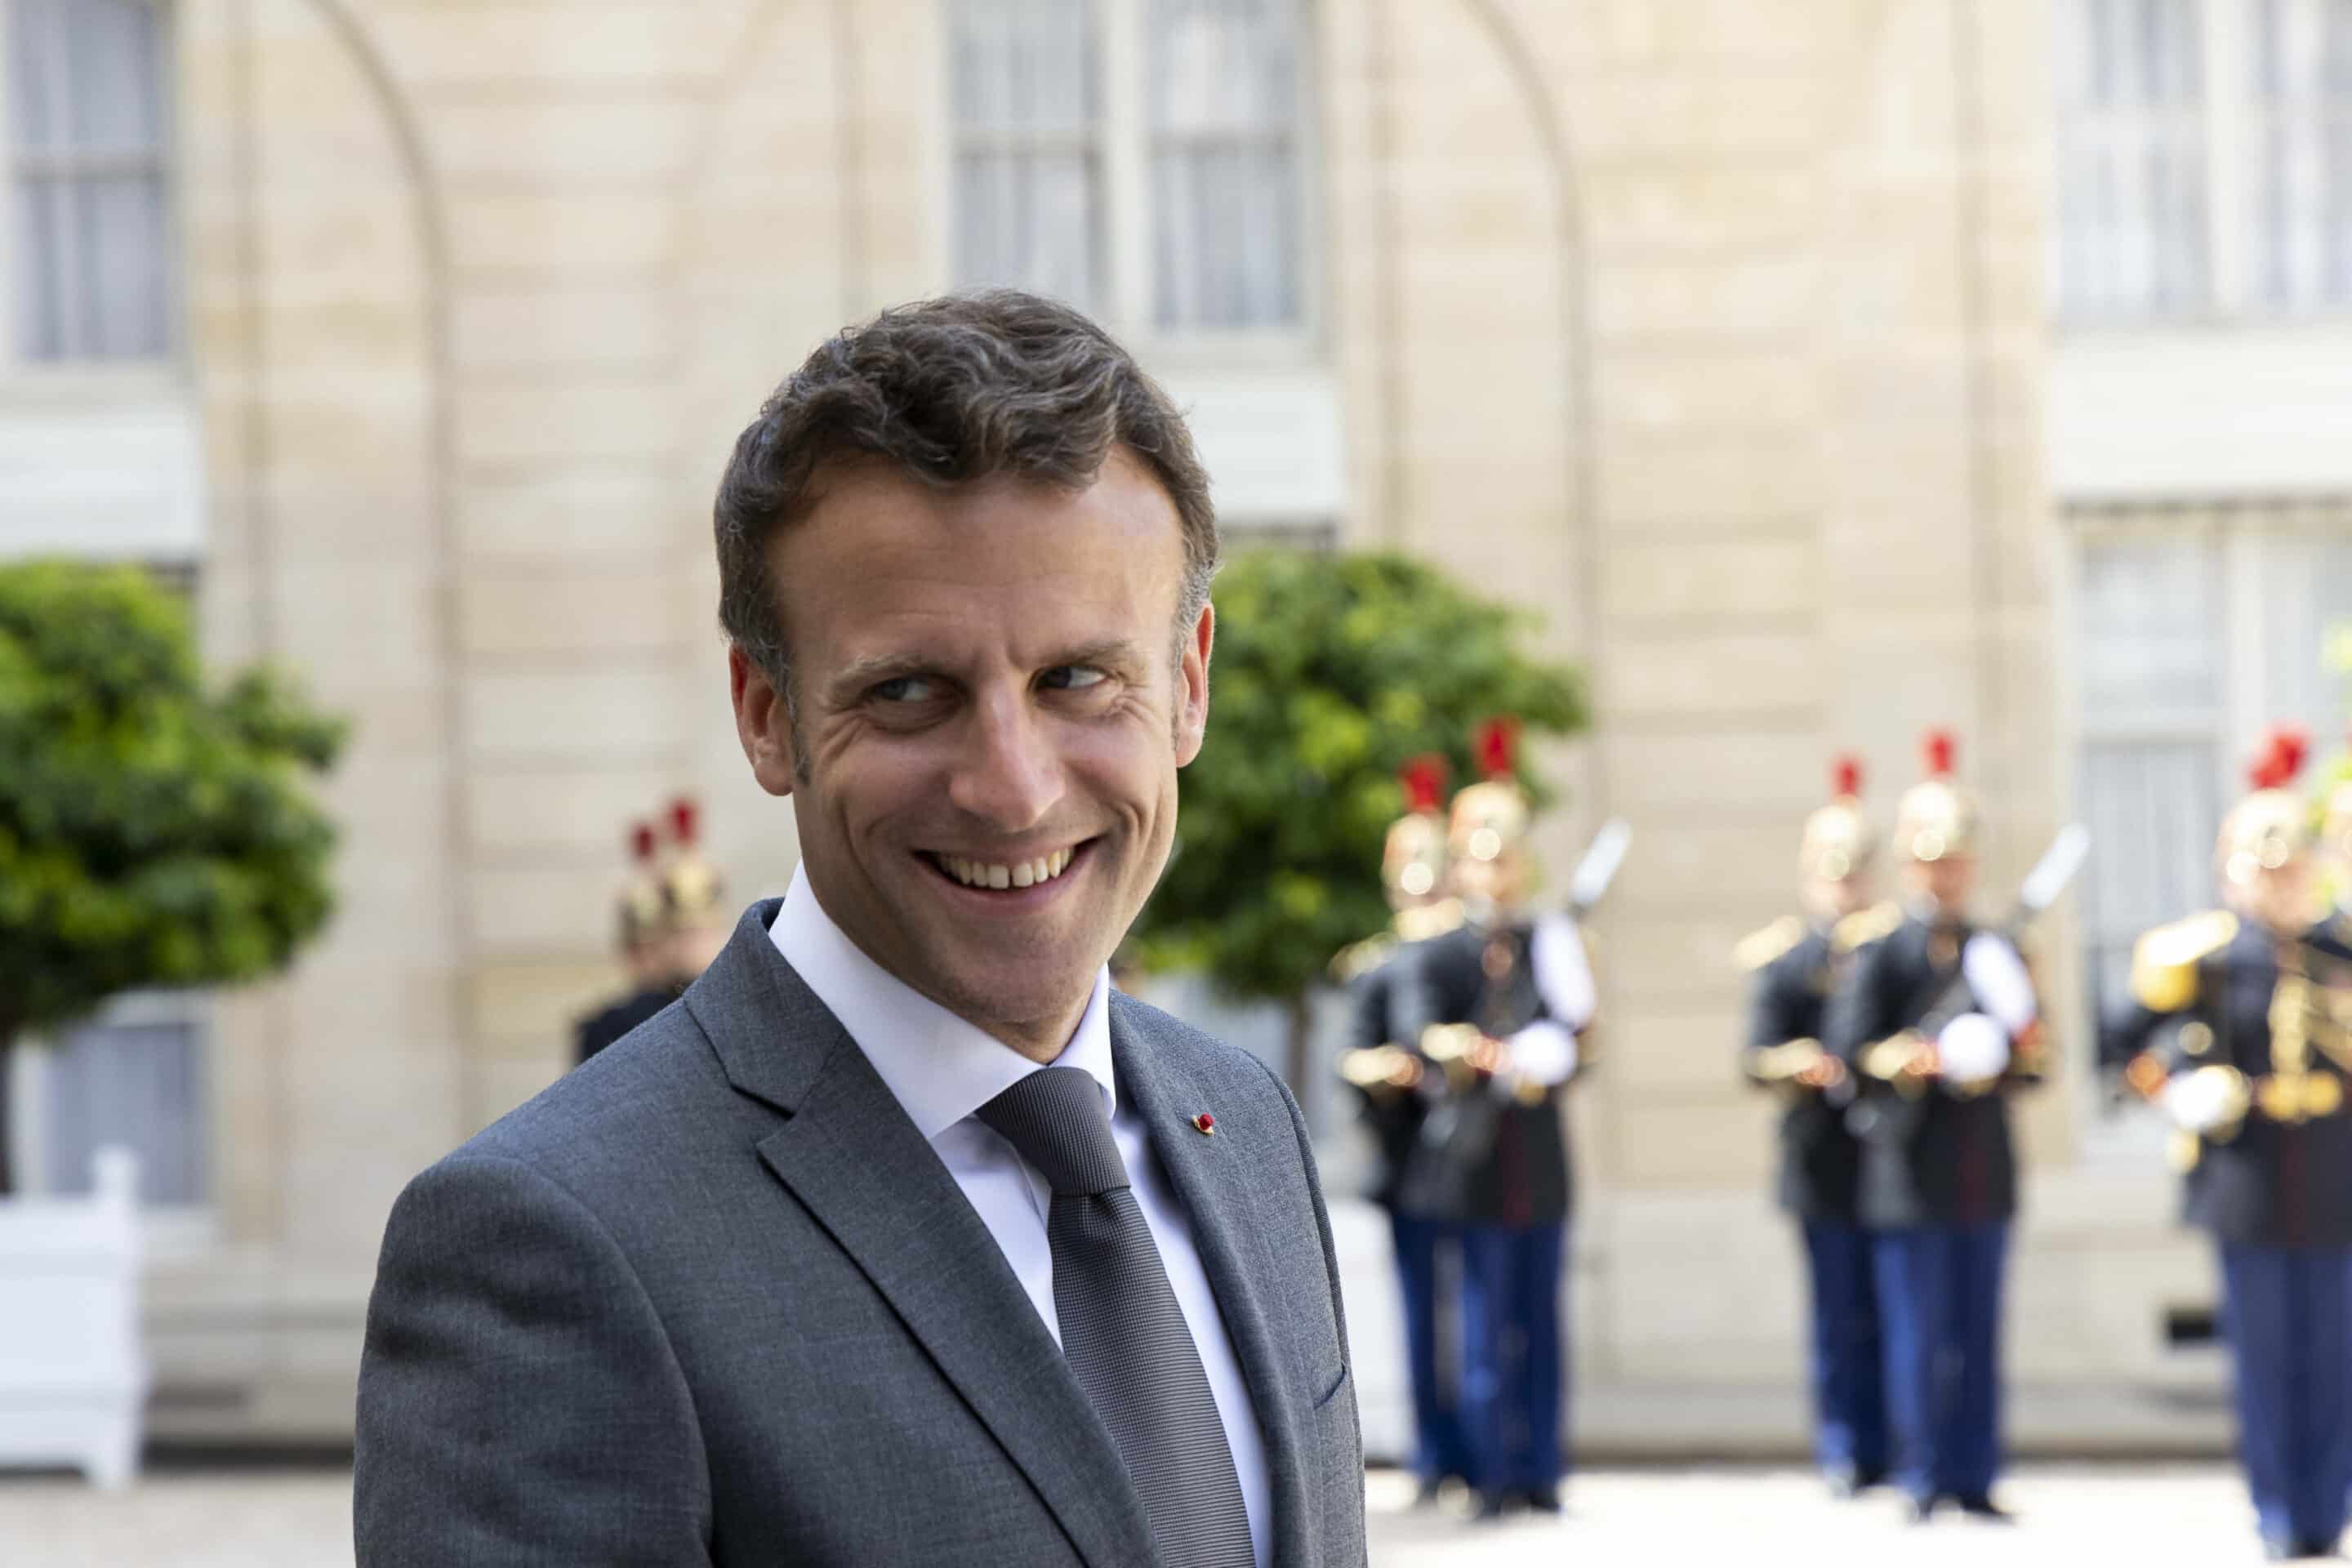 Le président français Emmanuel Macron s'adresse aux journalistes, mardi 5 juillet 2022, au palais de l'Élysée à Paris.
Crédits : Thomas Hubert/SIPA